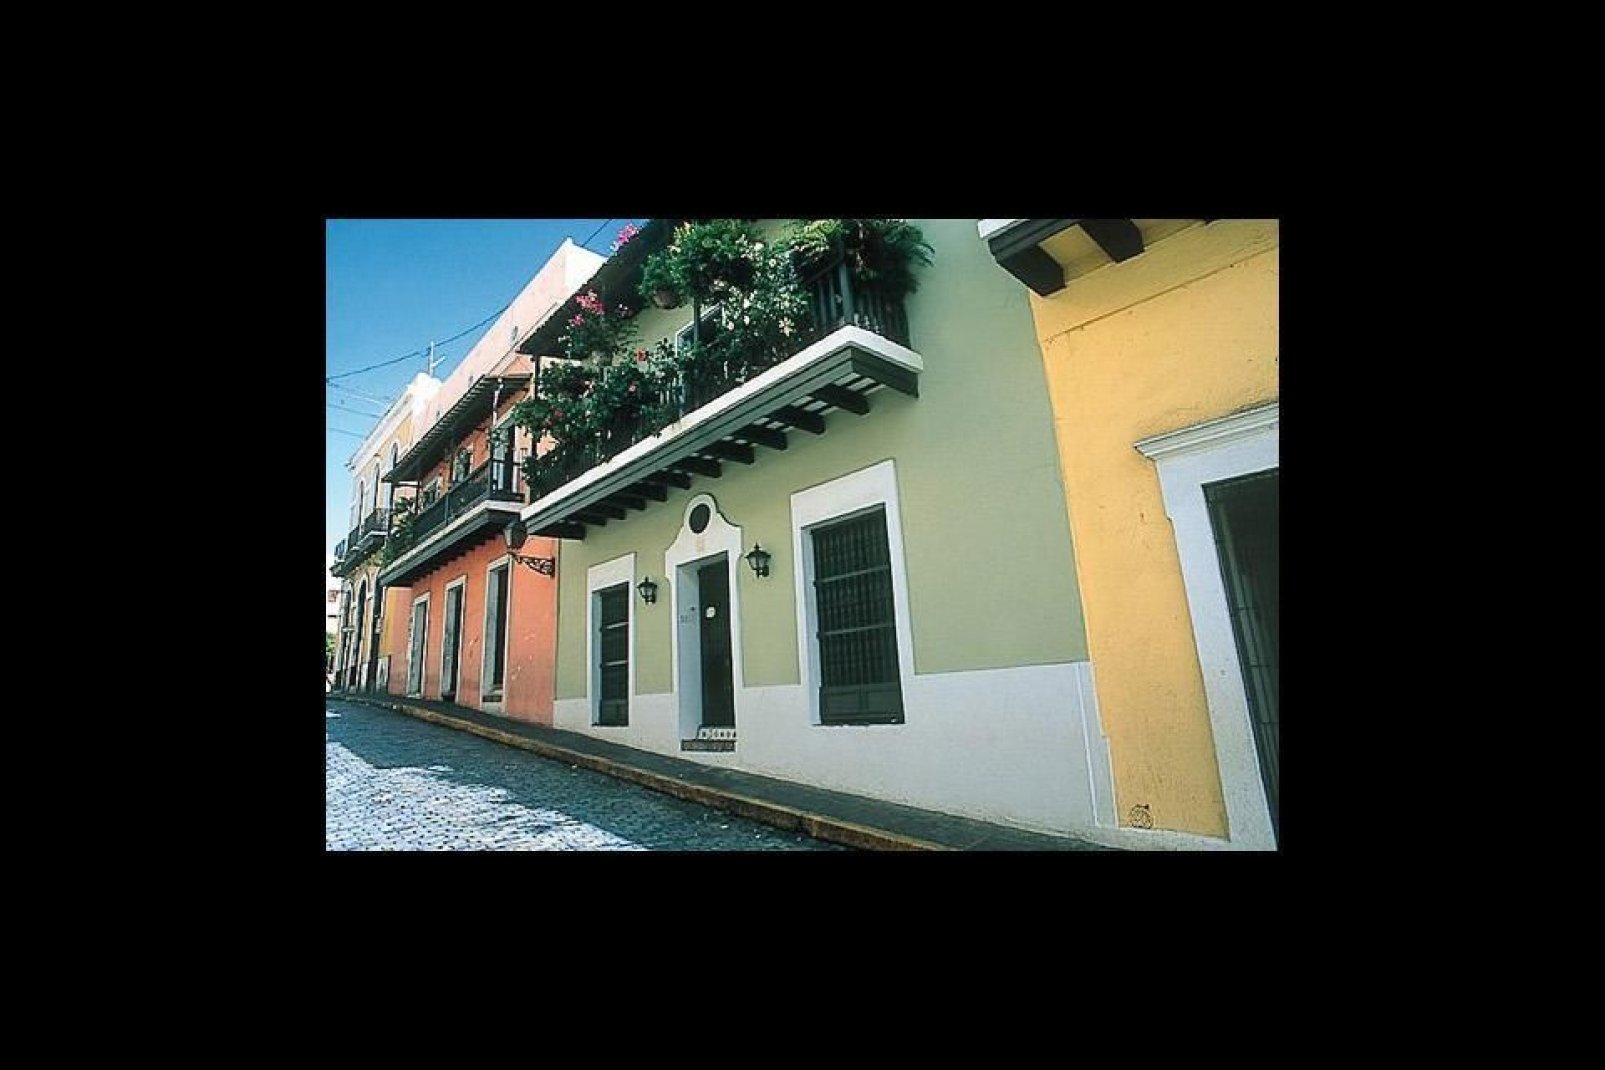 San Juan riesce nell'impresa di riunire tutte le possibili attrazioni turistiche: un'atmosfera festaiola, una gastronomia di alto livello, edifici storici protetti...